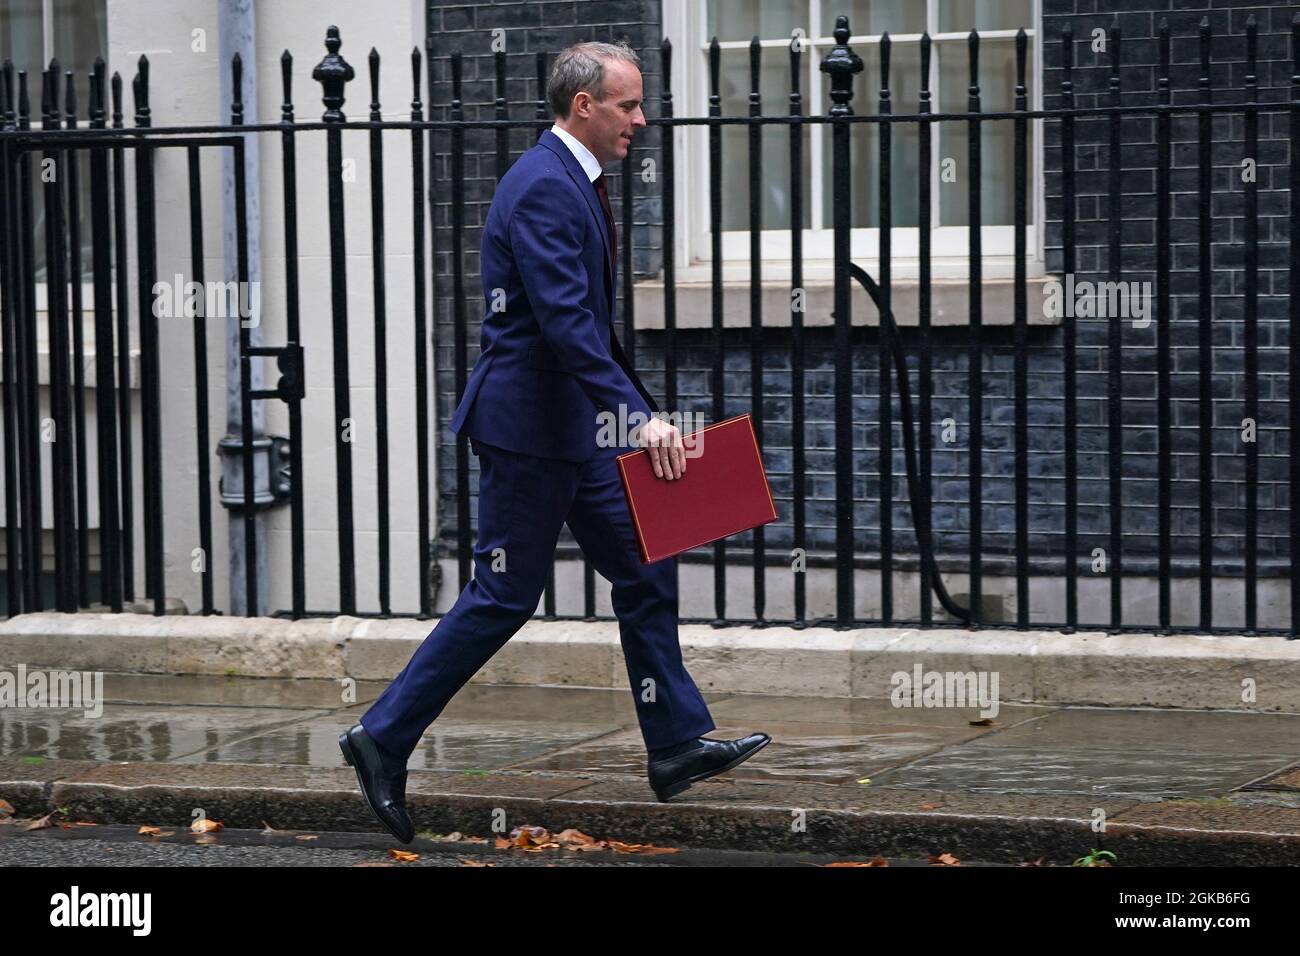 Le secrétaire aux Affaires étrangères Dominic Raab arrive à Downing Street, Londres, avant la réunion hebdomadaire du Cabinet du gouvernement. Date de la photo: Mardi 14 septembre 2021. Banque D'Images